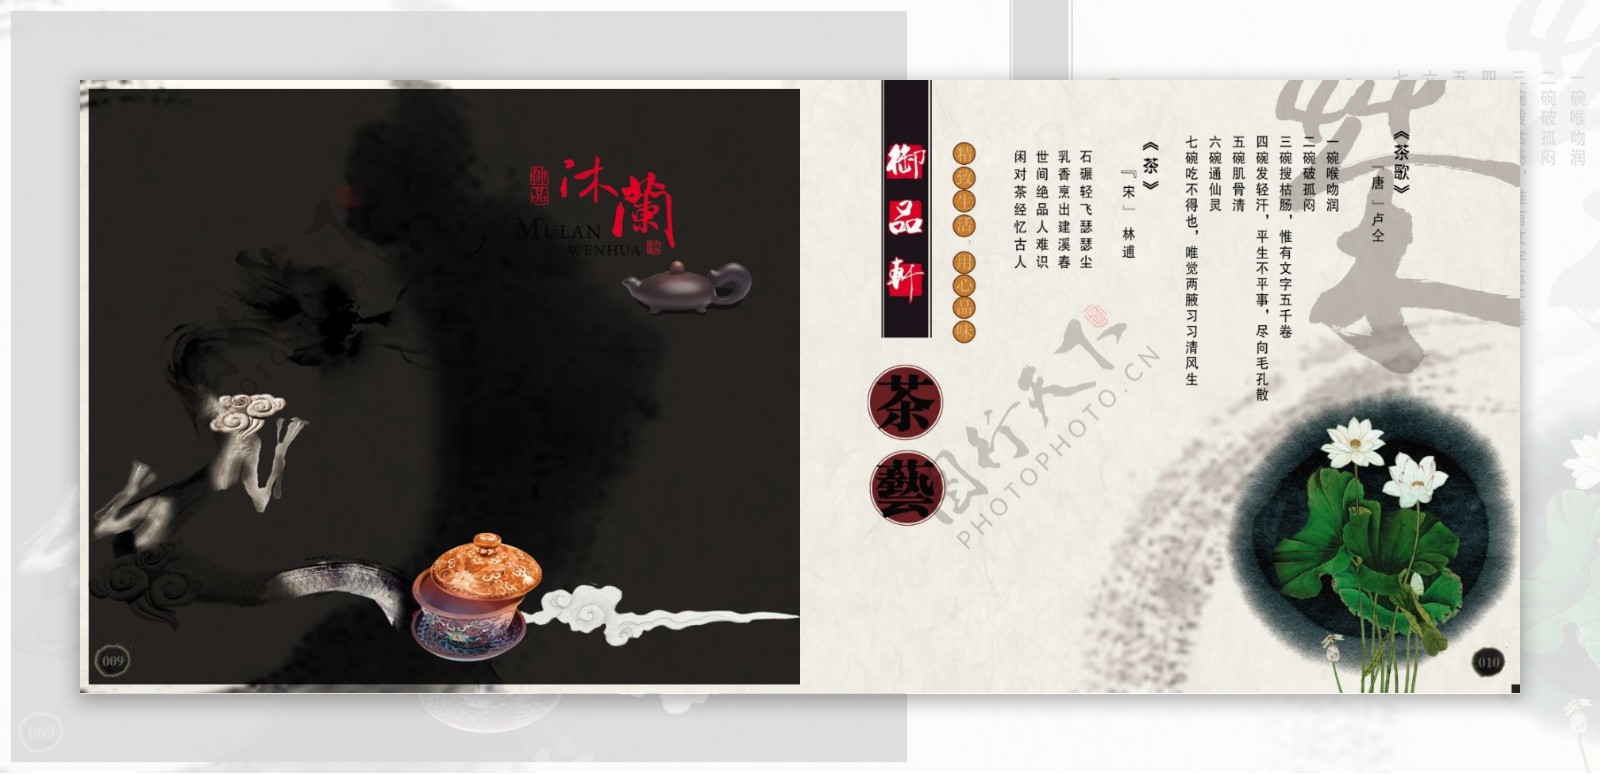 中国风茶叶画册内页图片